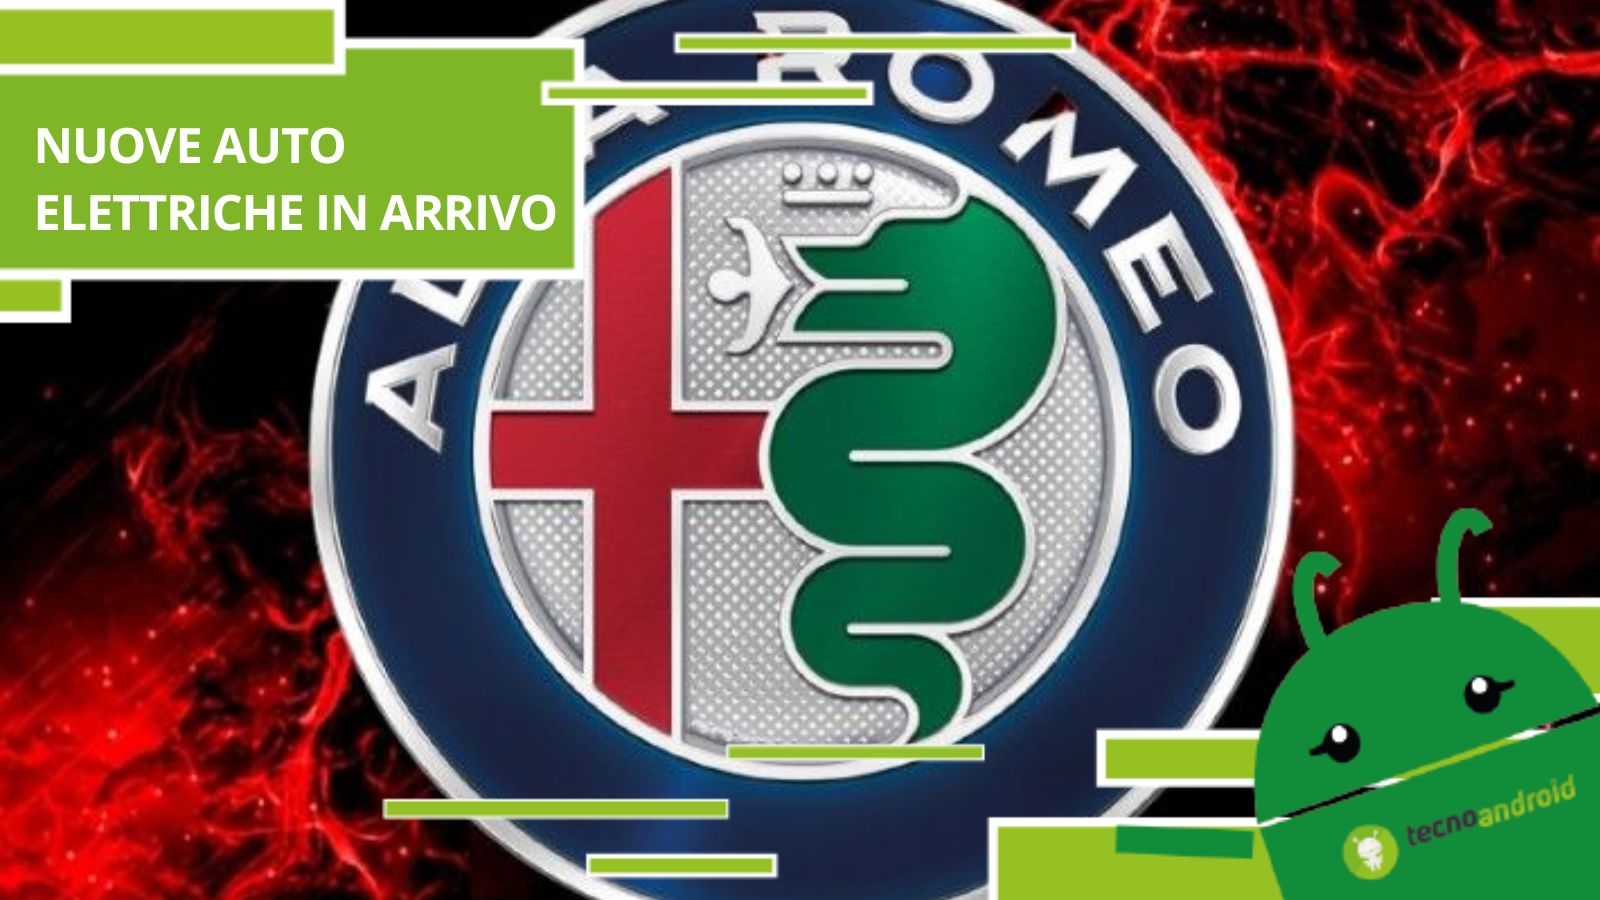 Alfa Romeo, ondata di nuove auto elettriche in arrivo